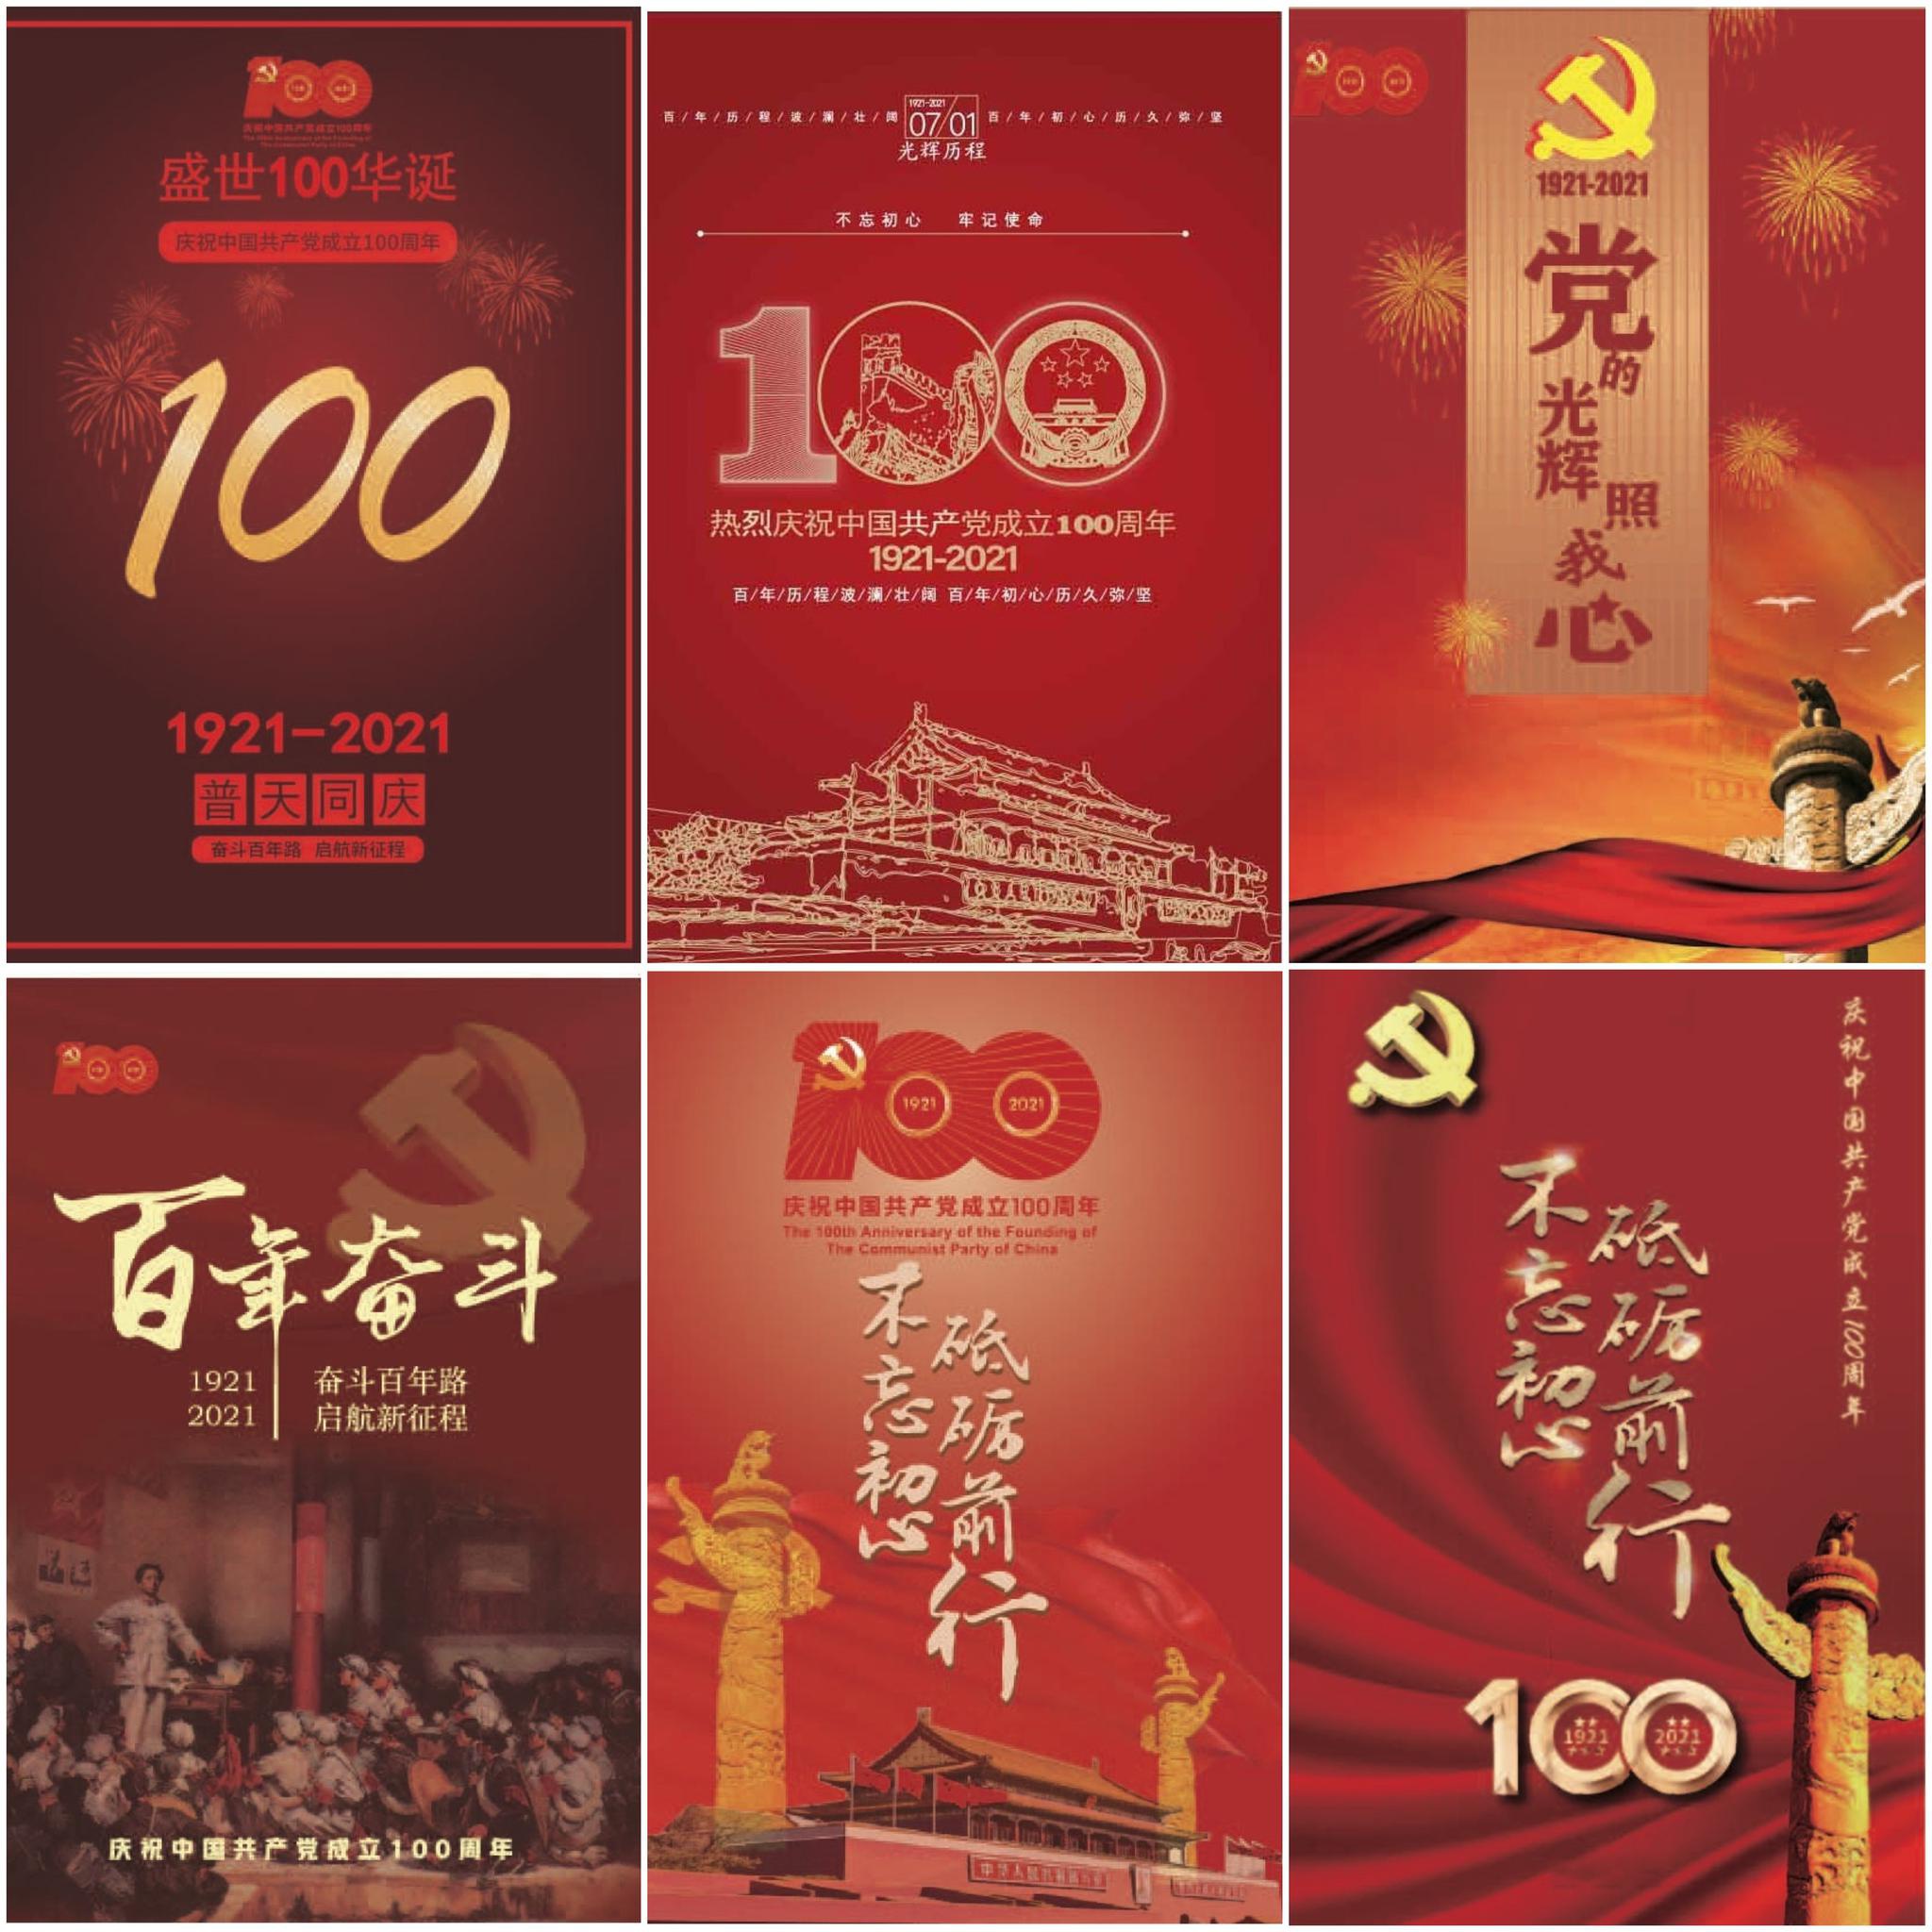 正文   原标题:福建工业学校学生制作建党100周年海报   关键字